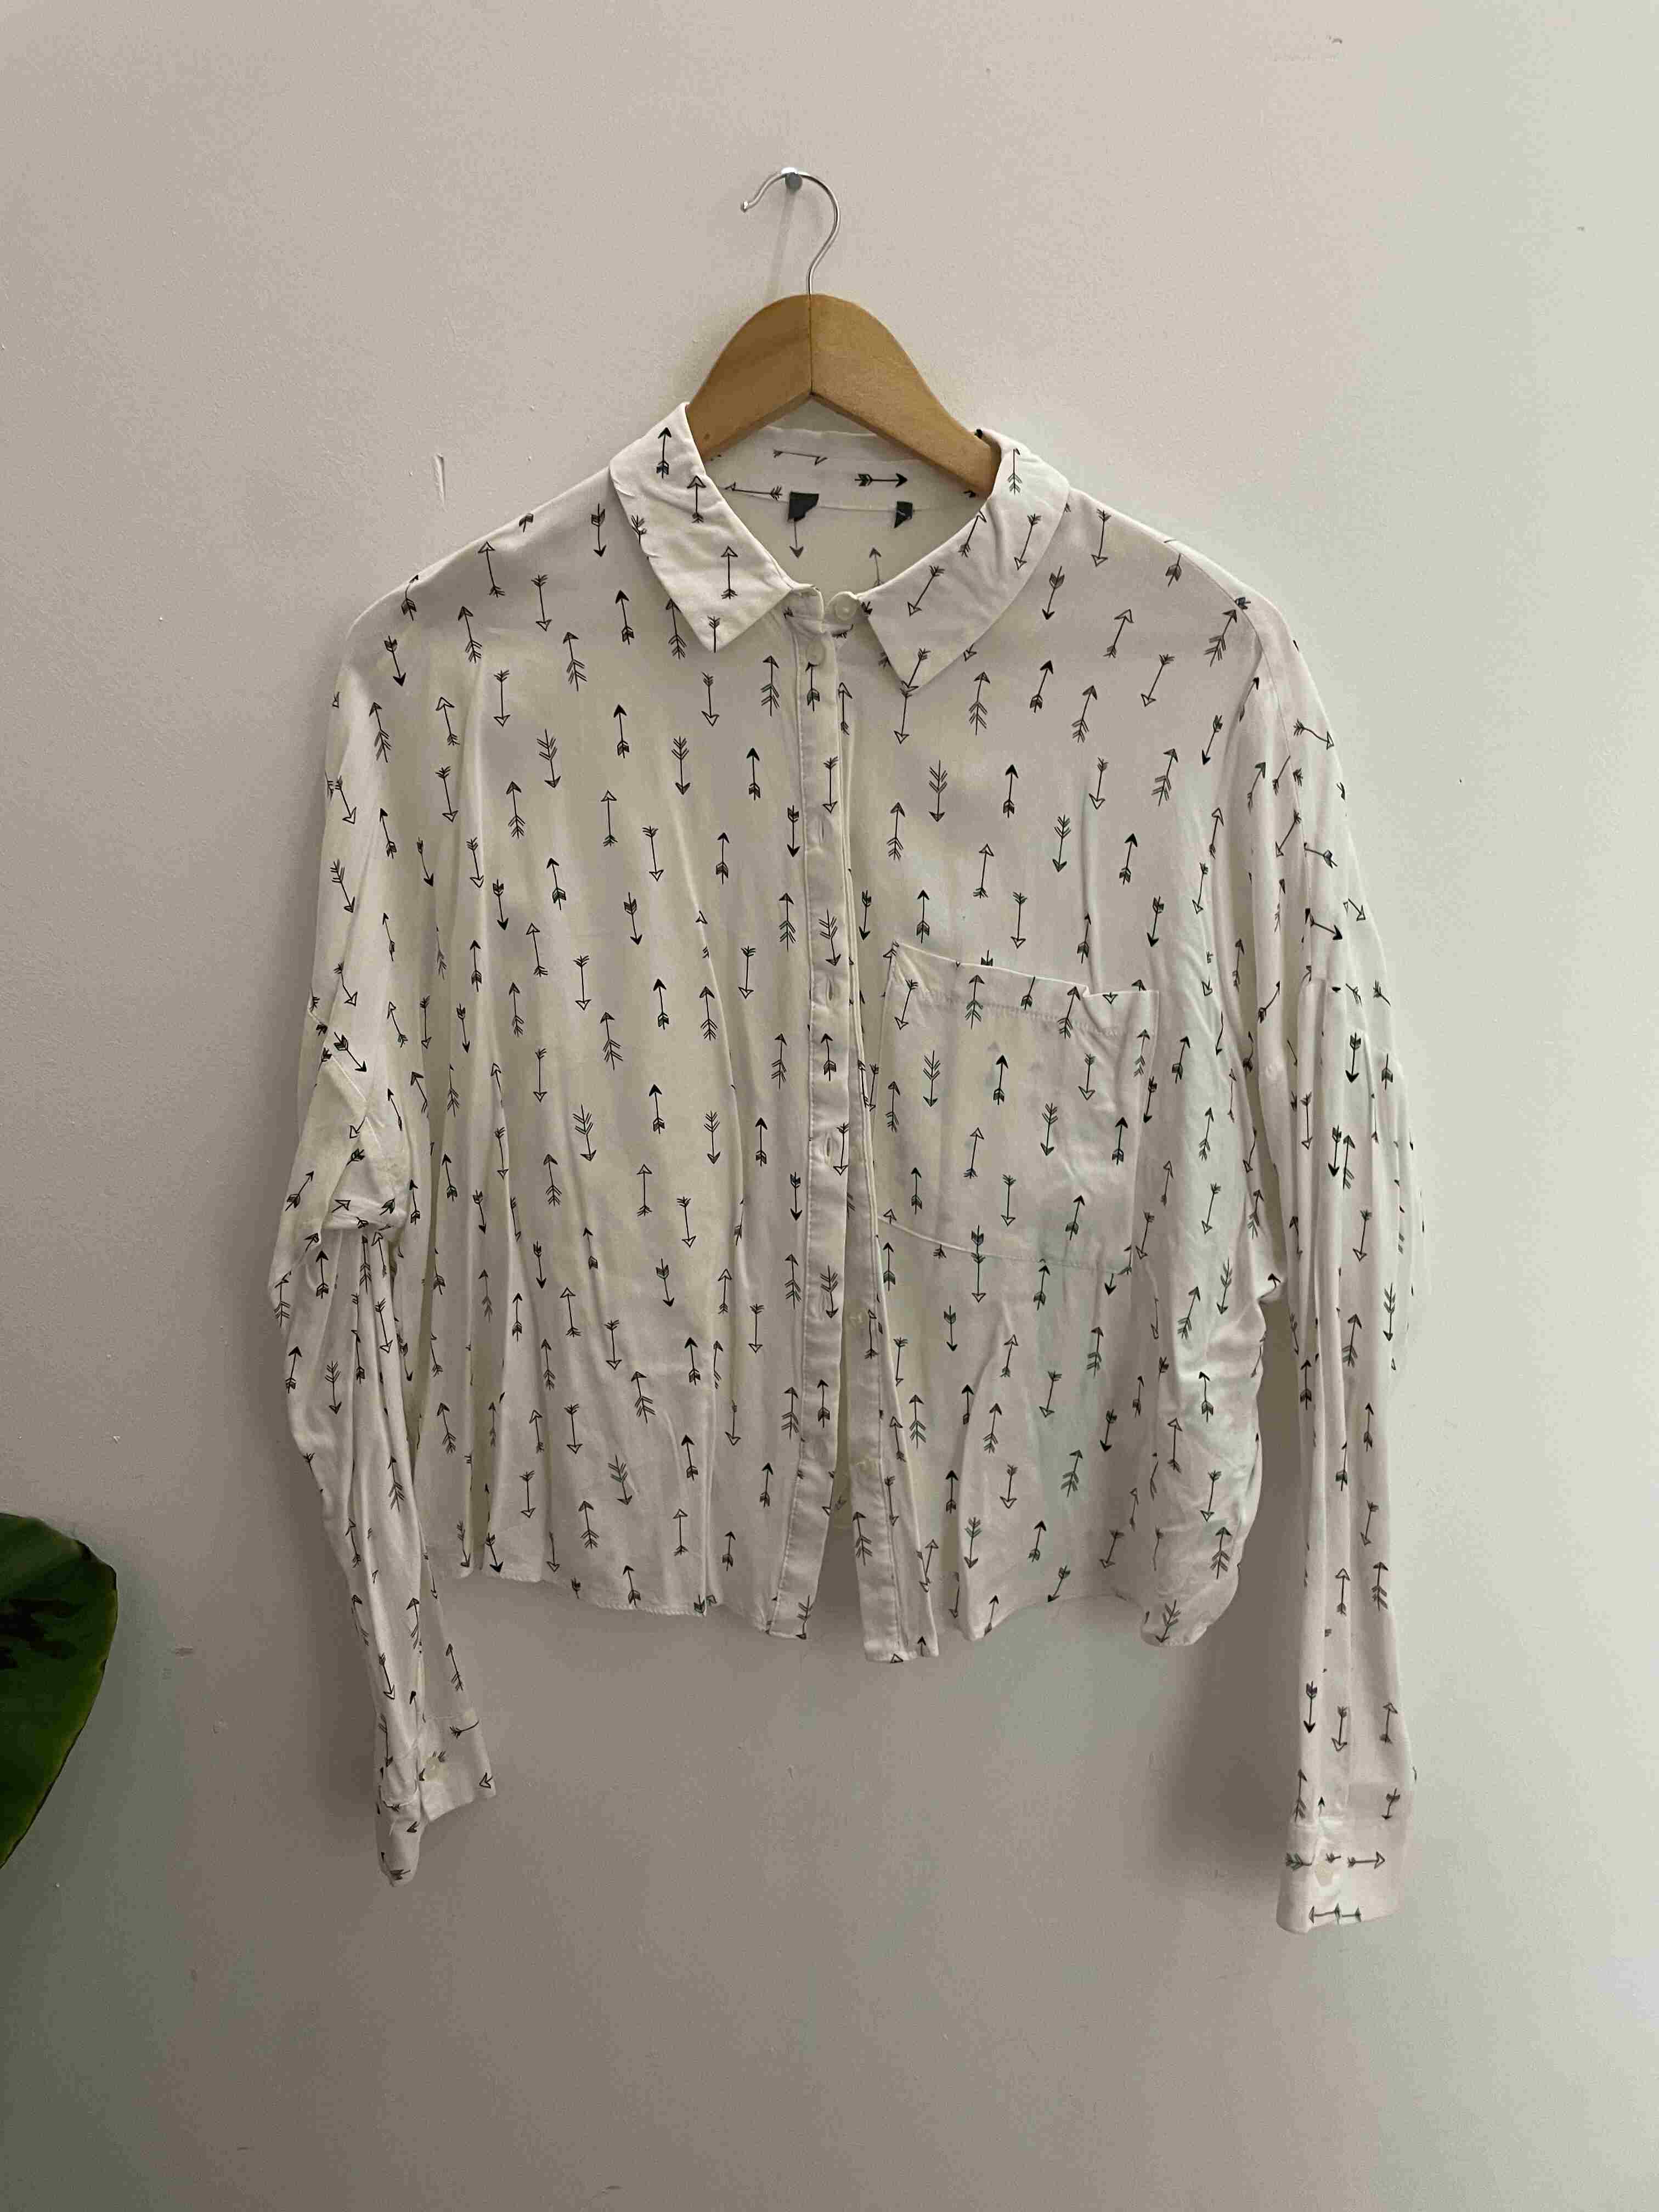 Vintage white printed pattern medium shirt size M